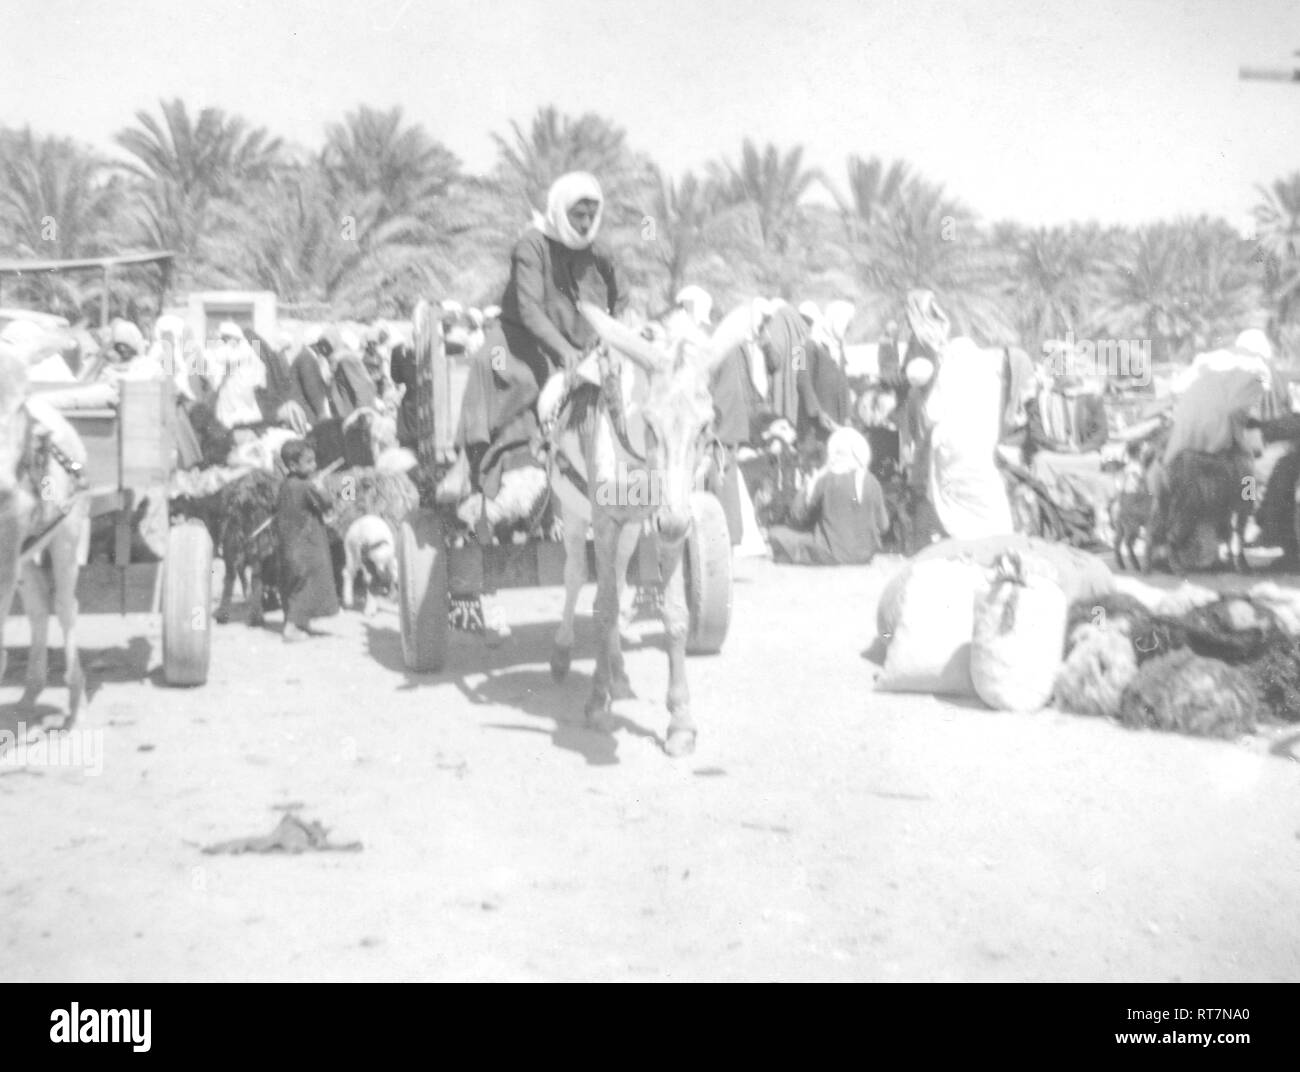 Scènes d'un voyage de jour à Al-Hofuf Hofuf (), Al-Ahsa, l'Arabie saoudite le long d'une journée d'hiver de 1968. Banque D'Images